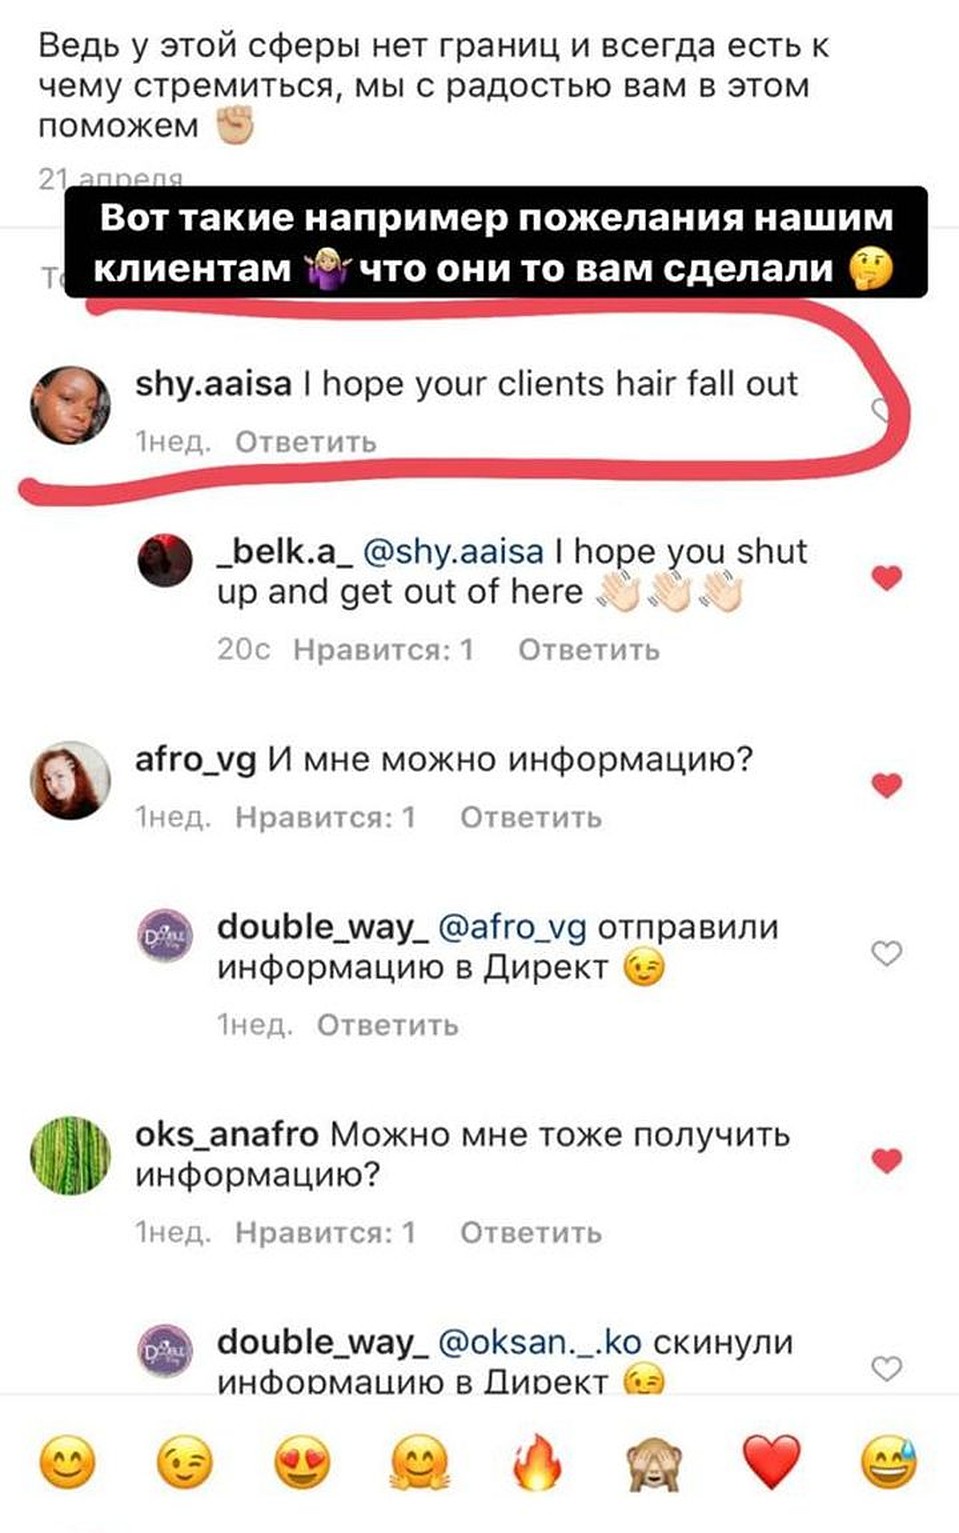 Сибирячек обвиняют в расизме и желают, чтобы у их клиентов выпали волосы. Фото: instagram/double_way 